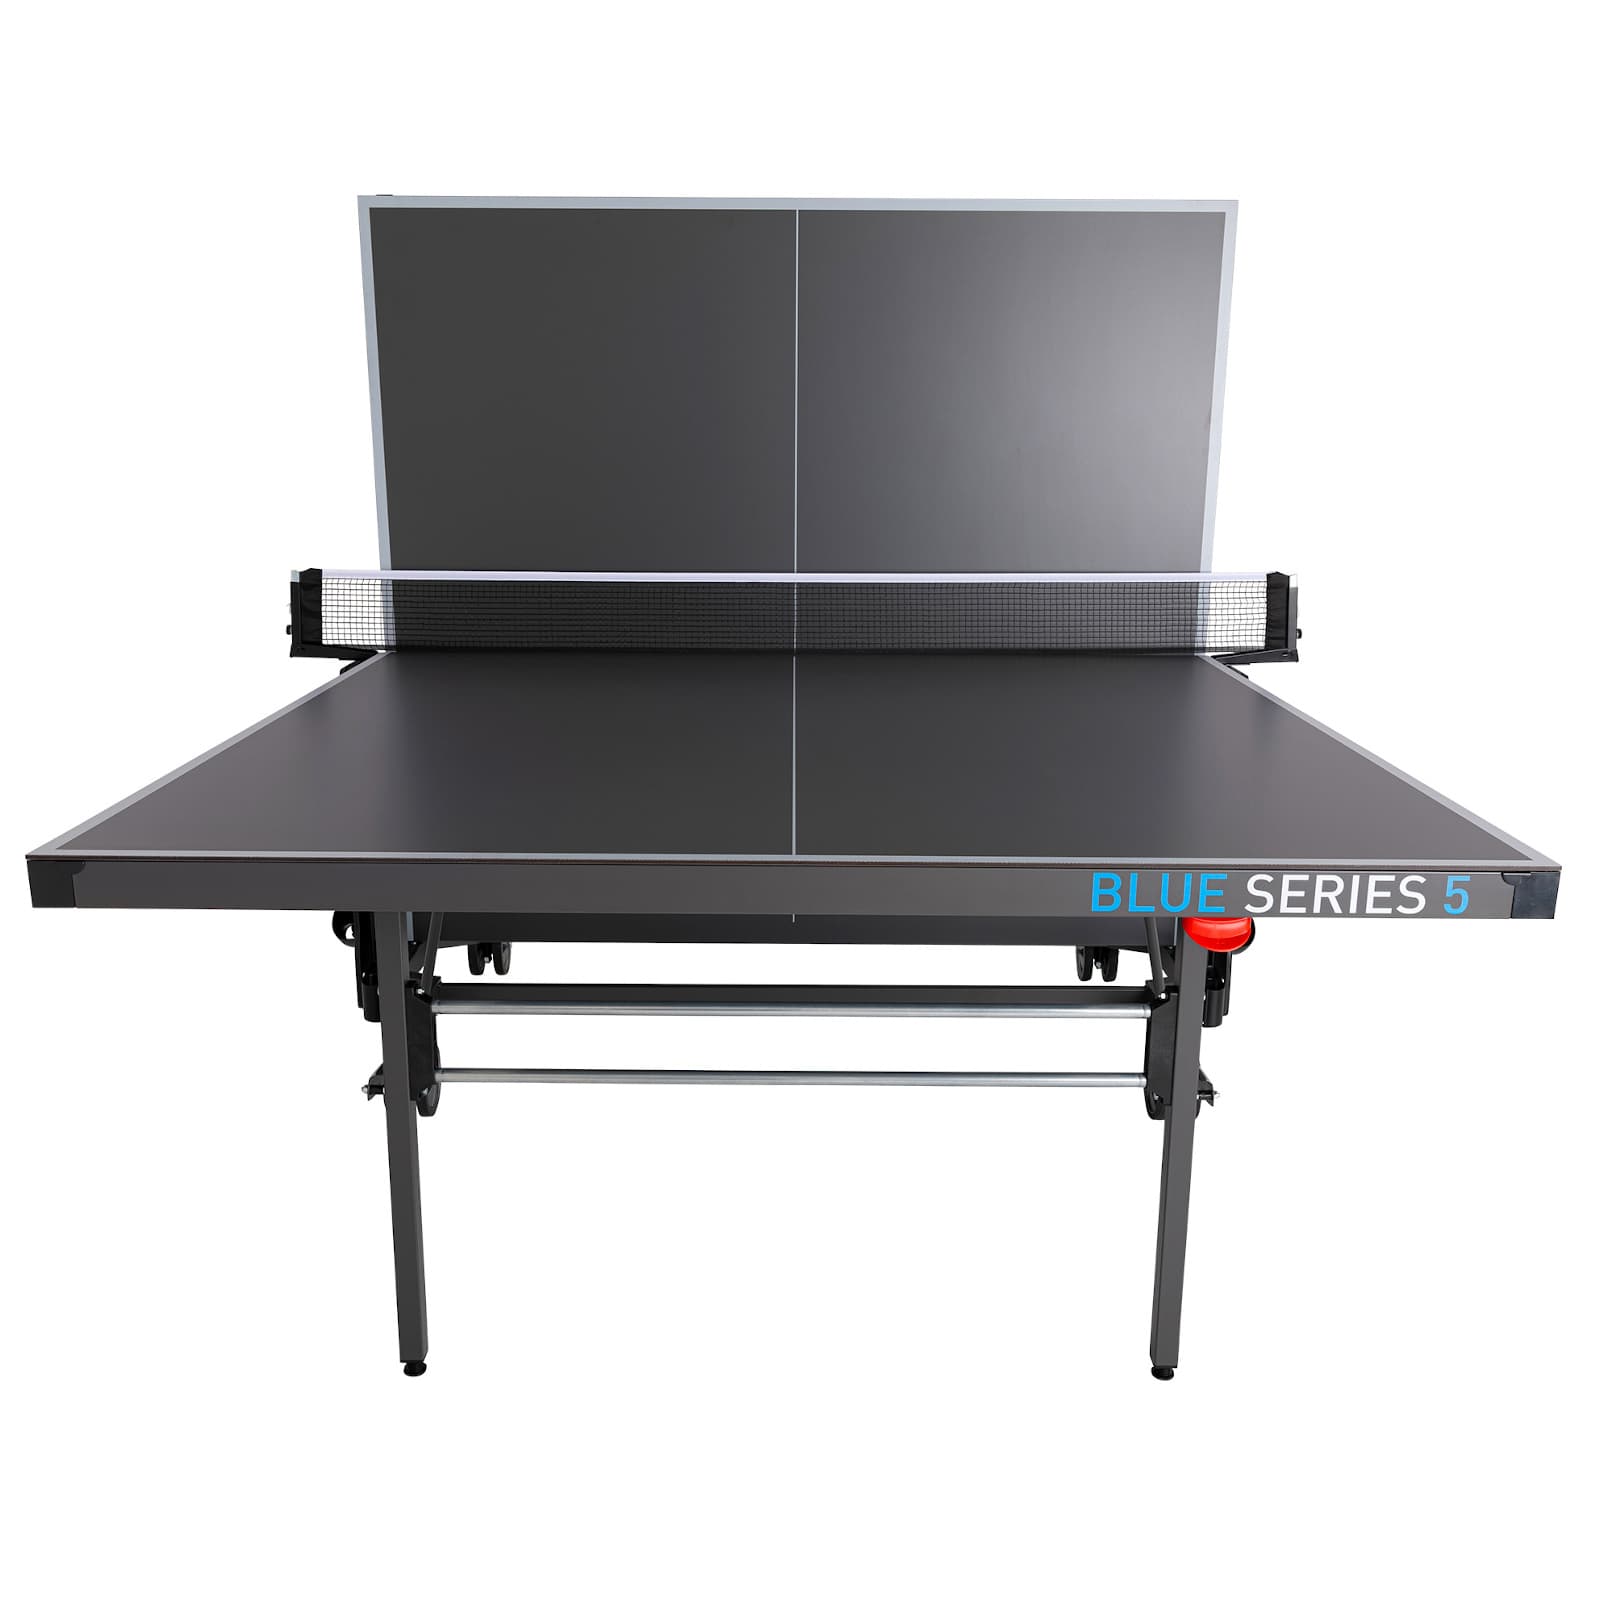 Table de ping-pong pliante Kettler Outdoor 5 (Blue Series)